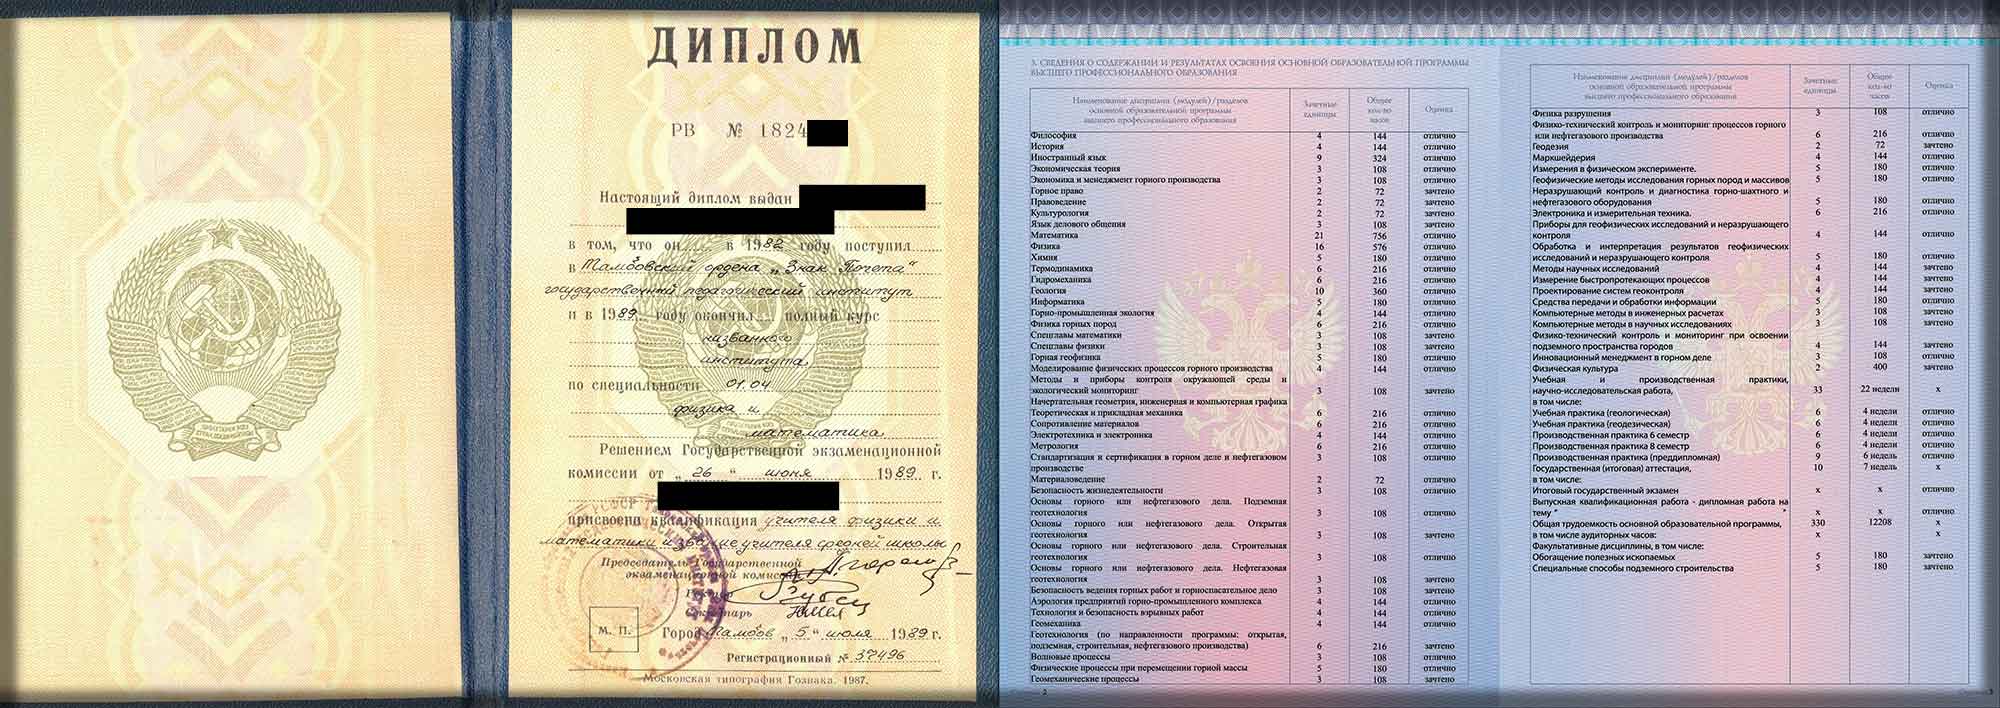 Подтверждение диплома в испании: возможные варианты, процедура, документы - prian.ru